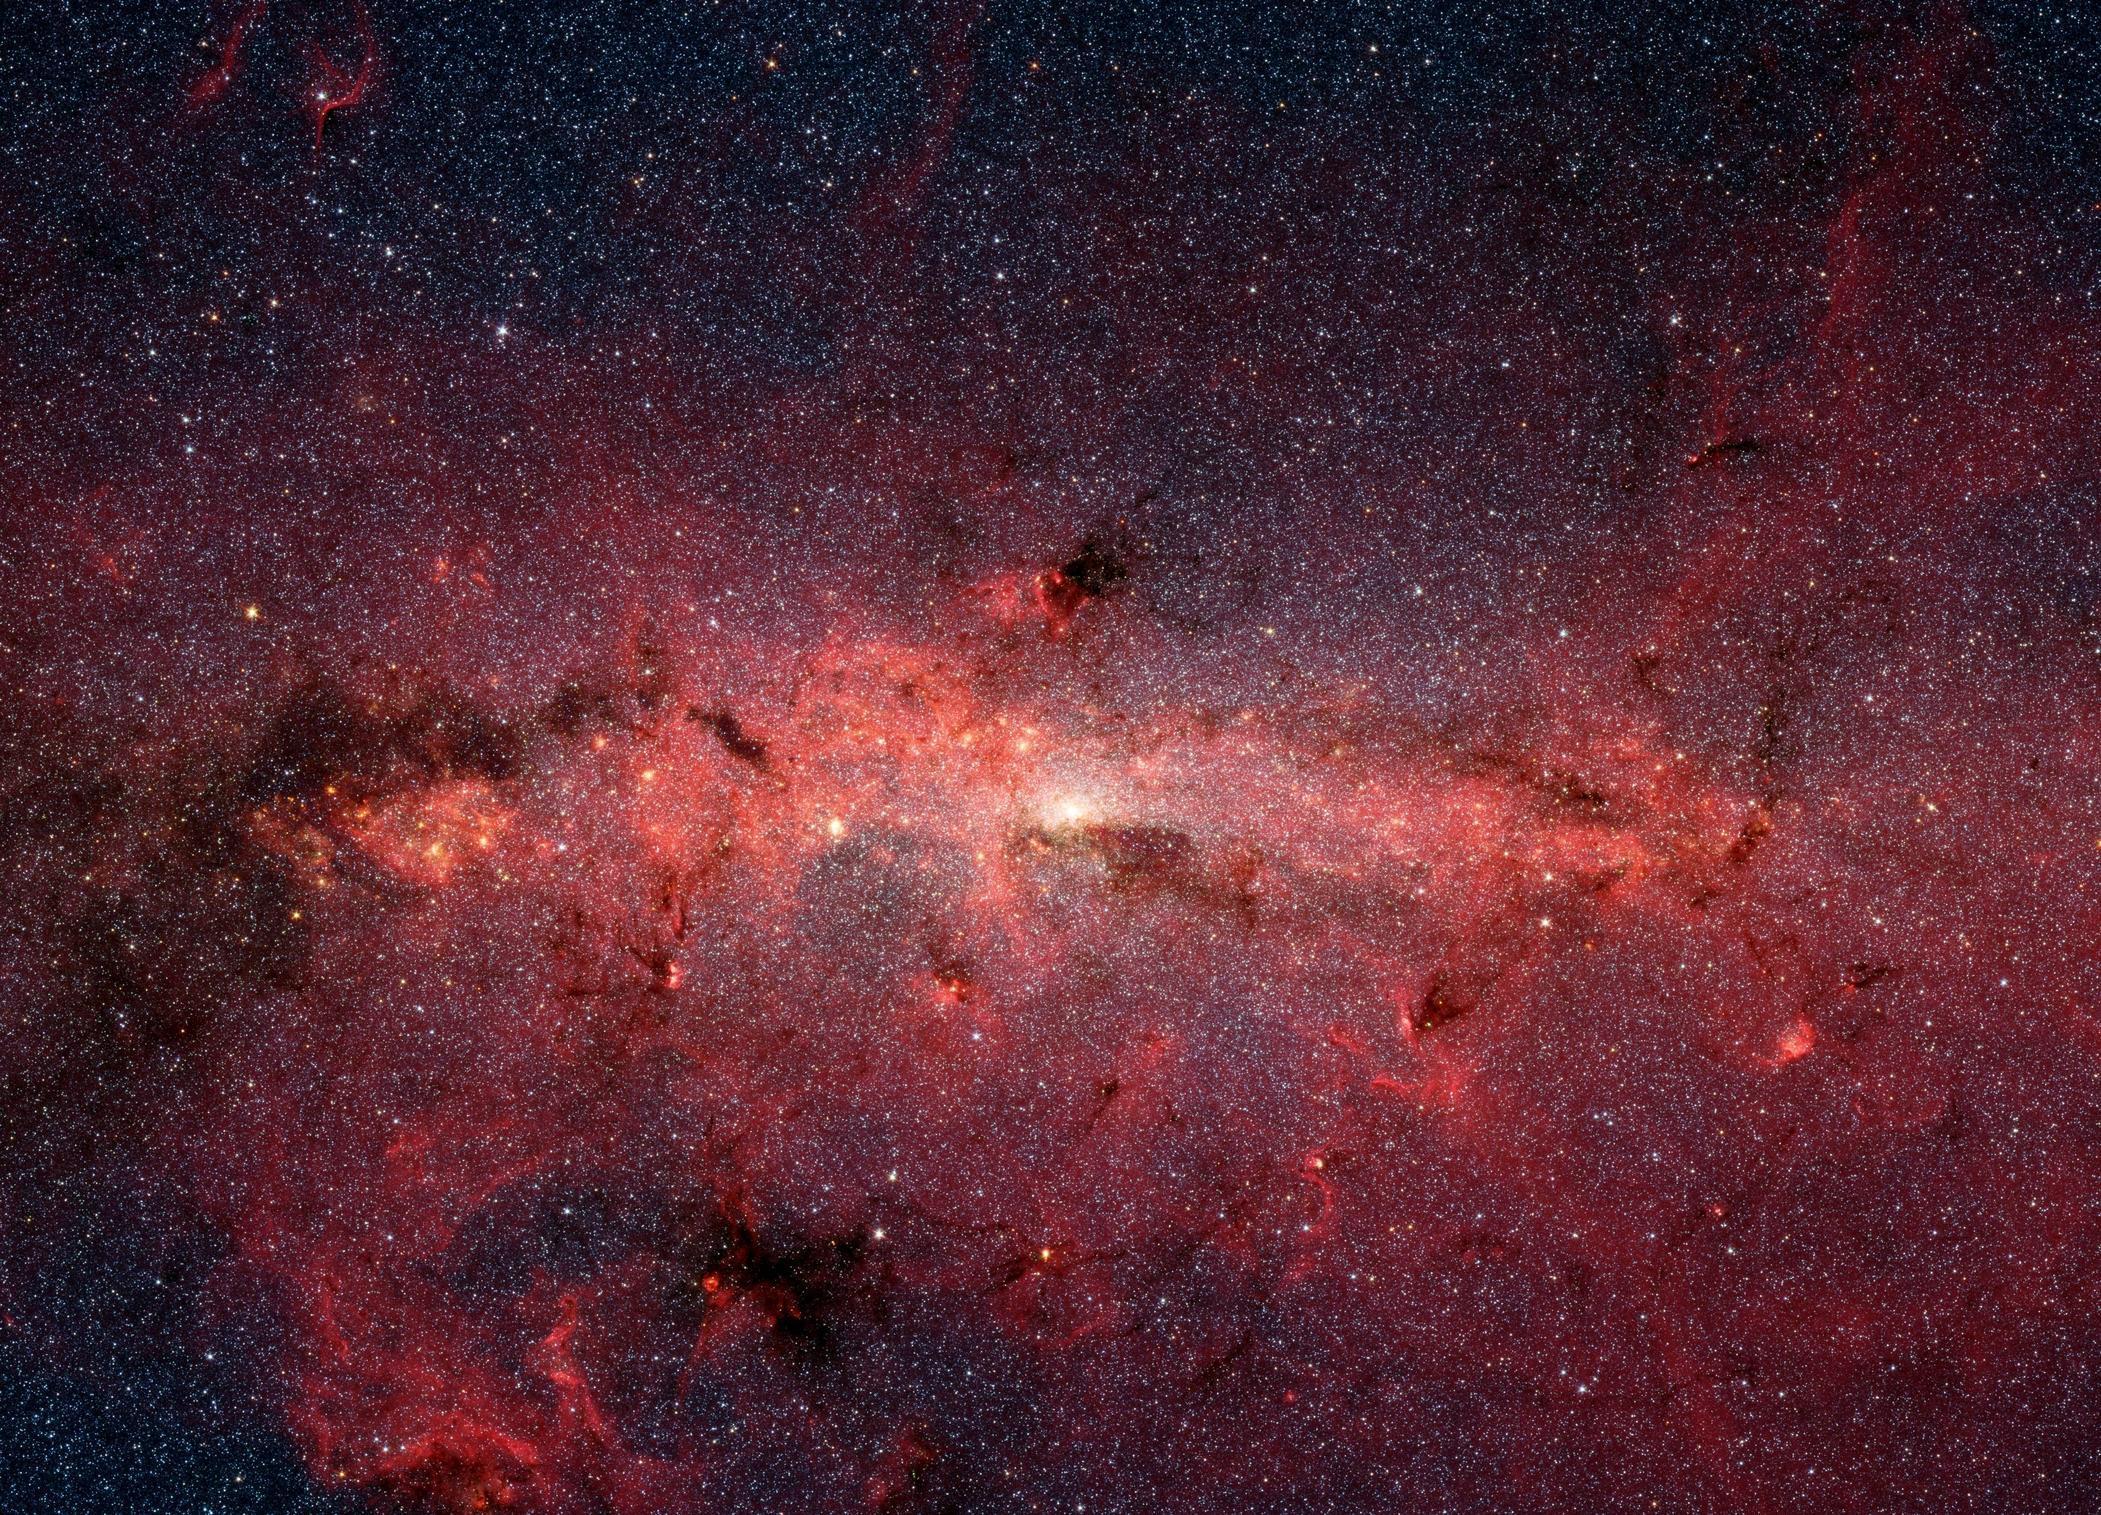 Milky Way, the free encyclopedia